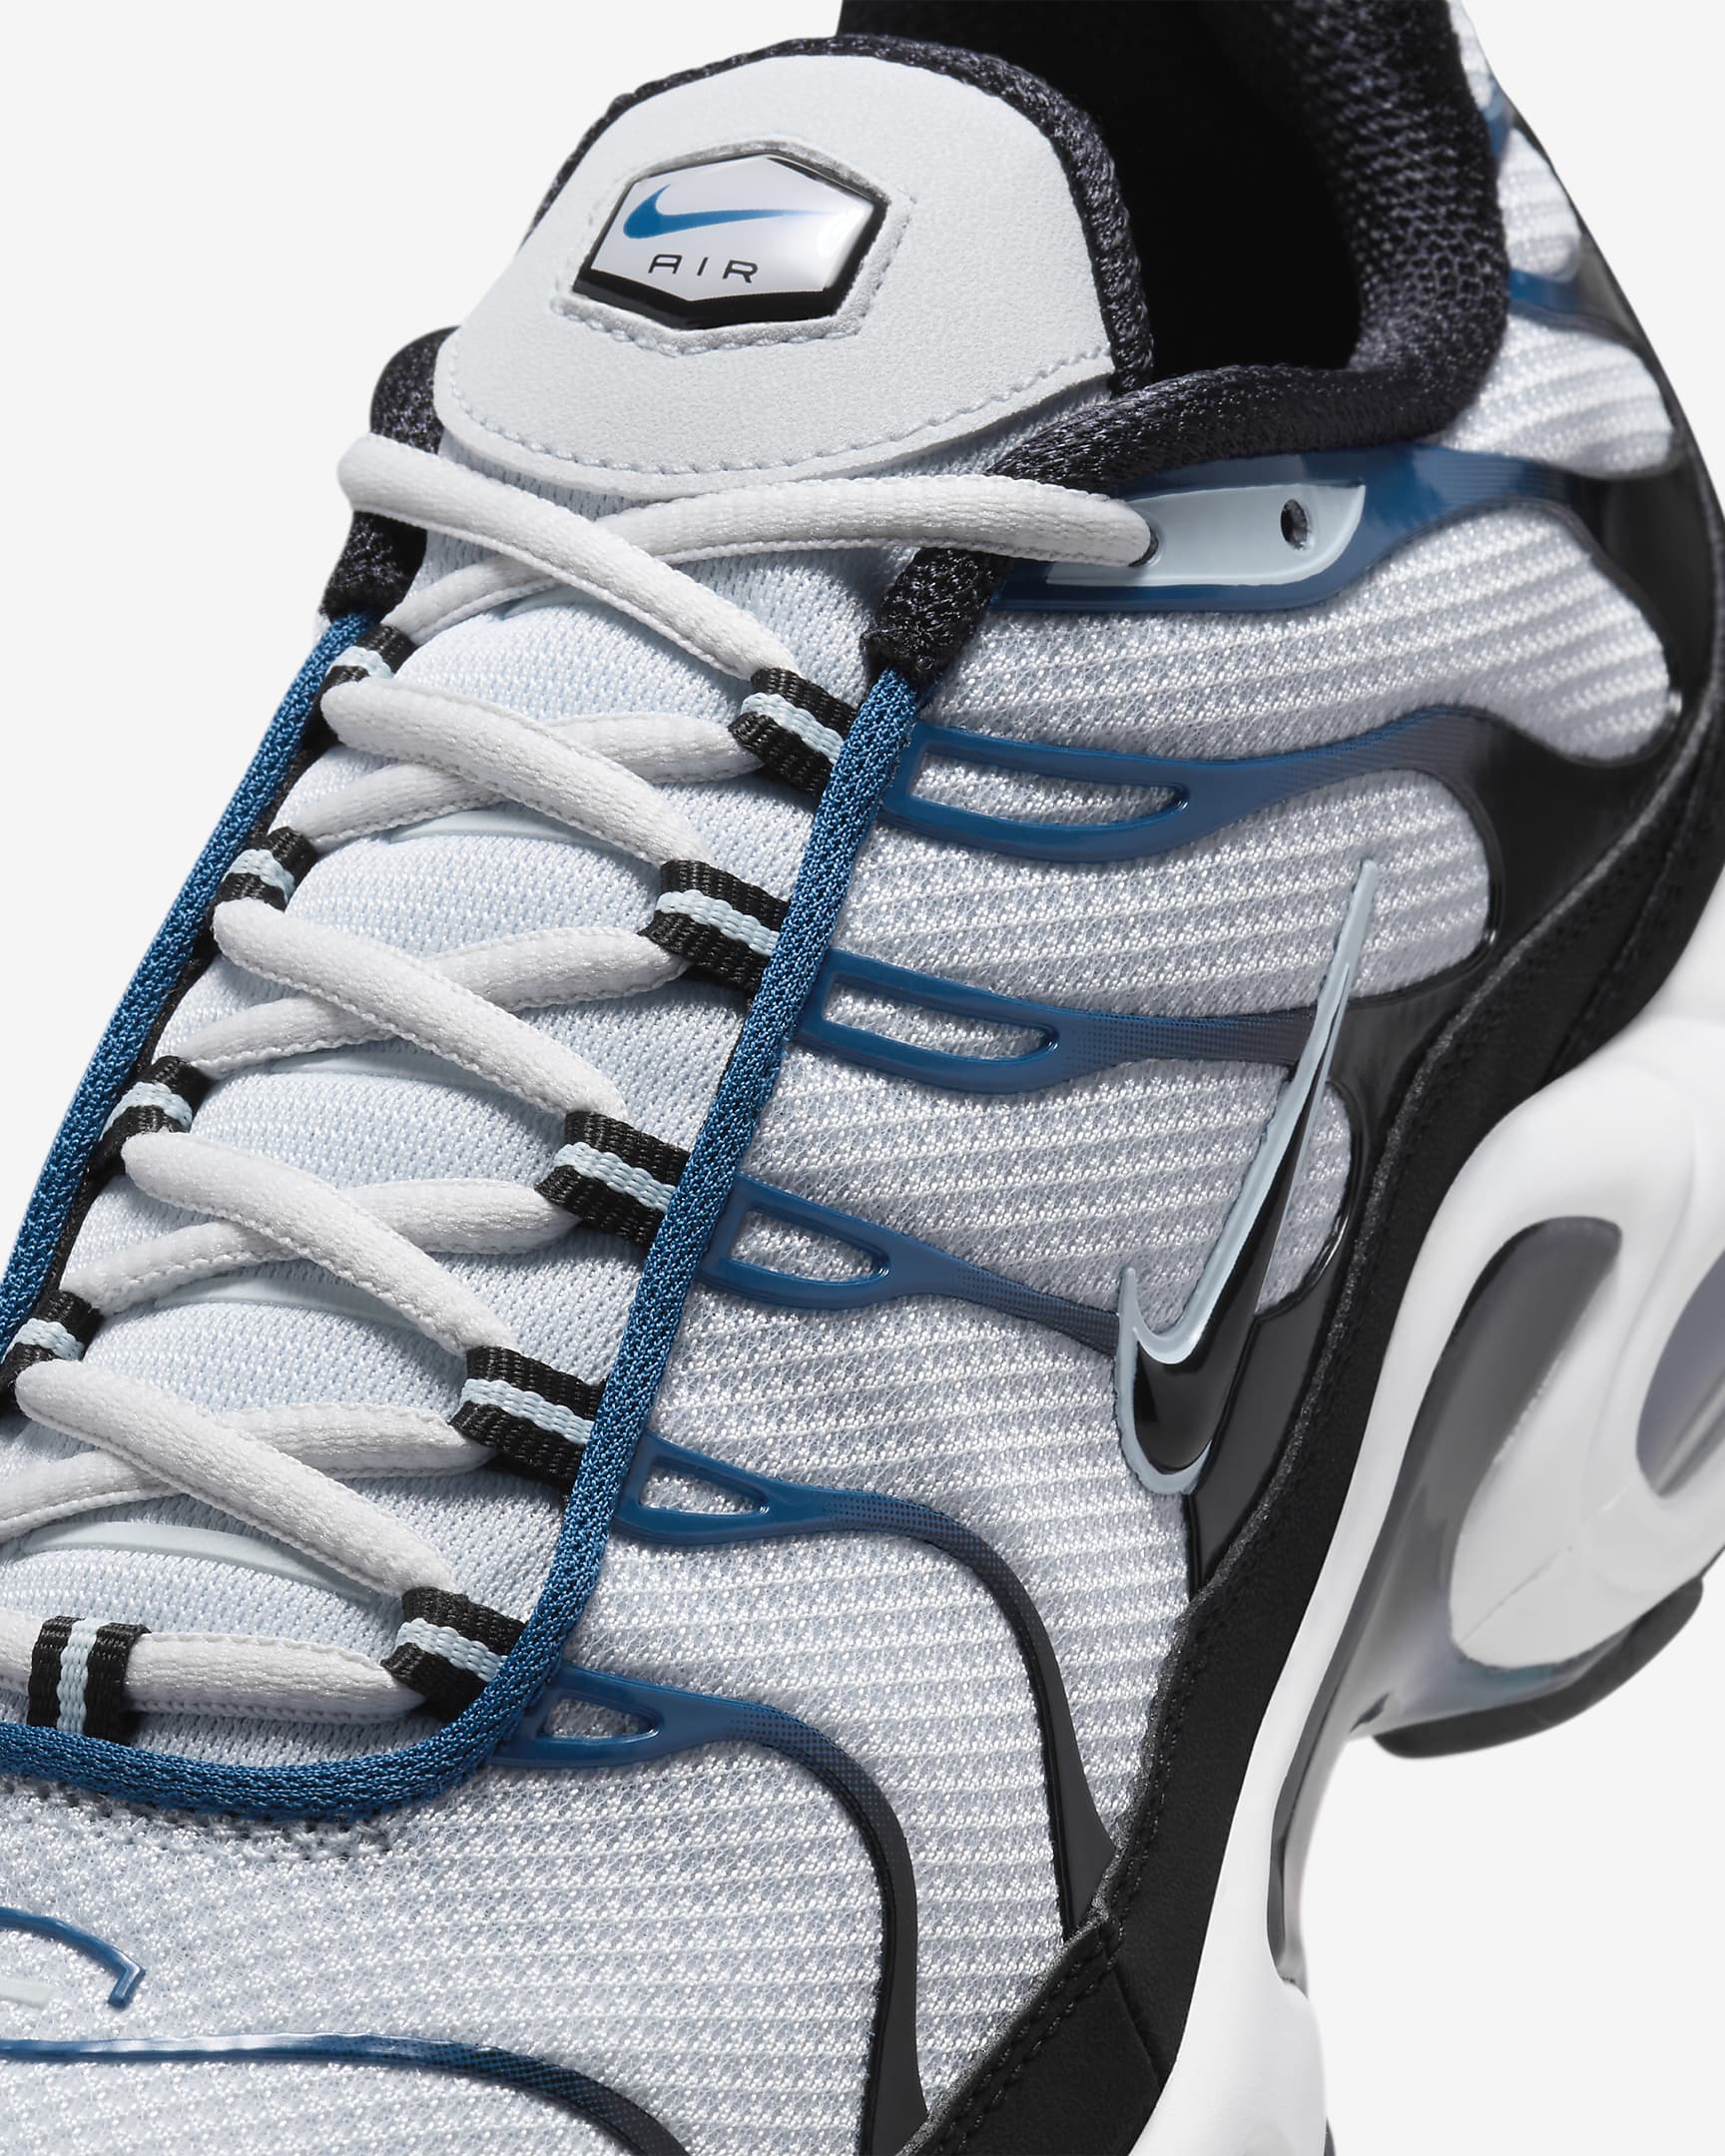 Nike Air Max Plus Men's Shoes - Pure Platinum/Court Blue/Glacier Blue/Black